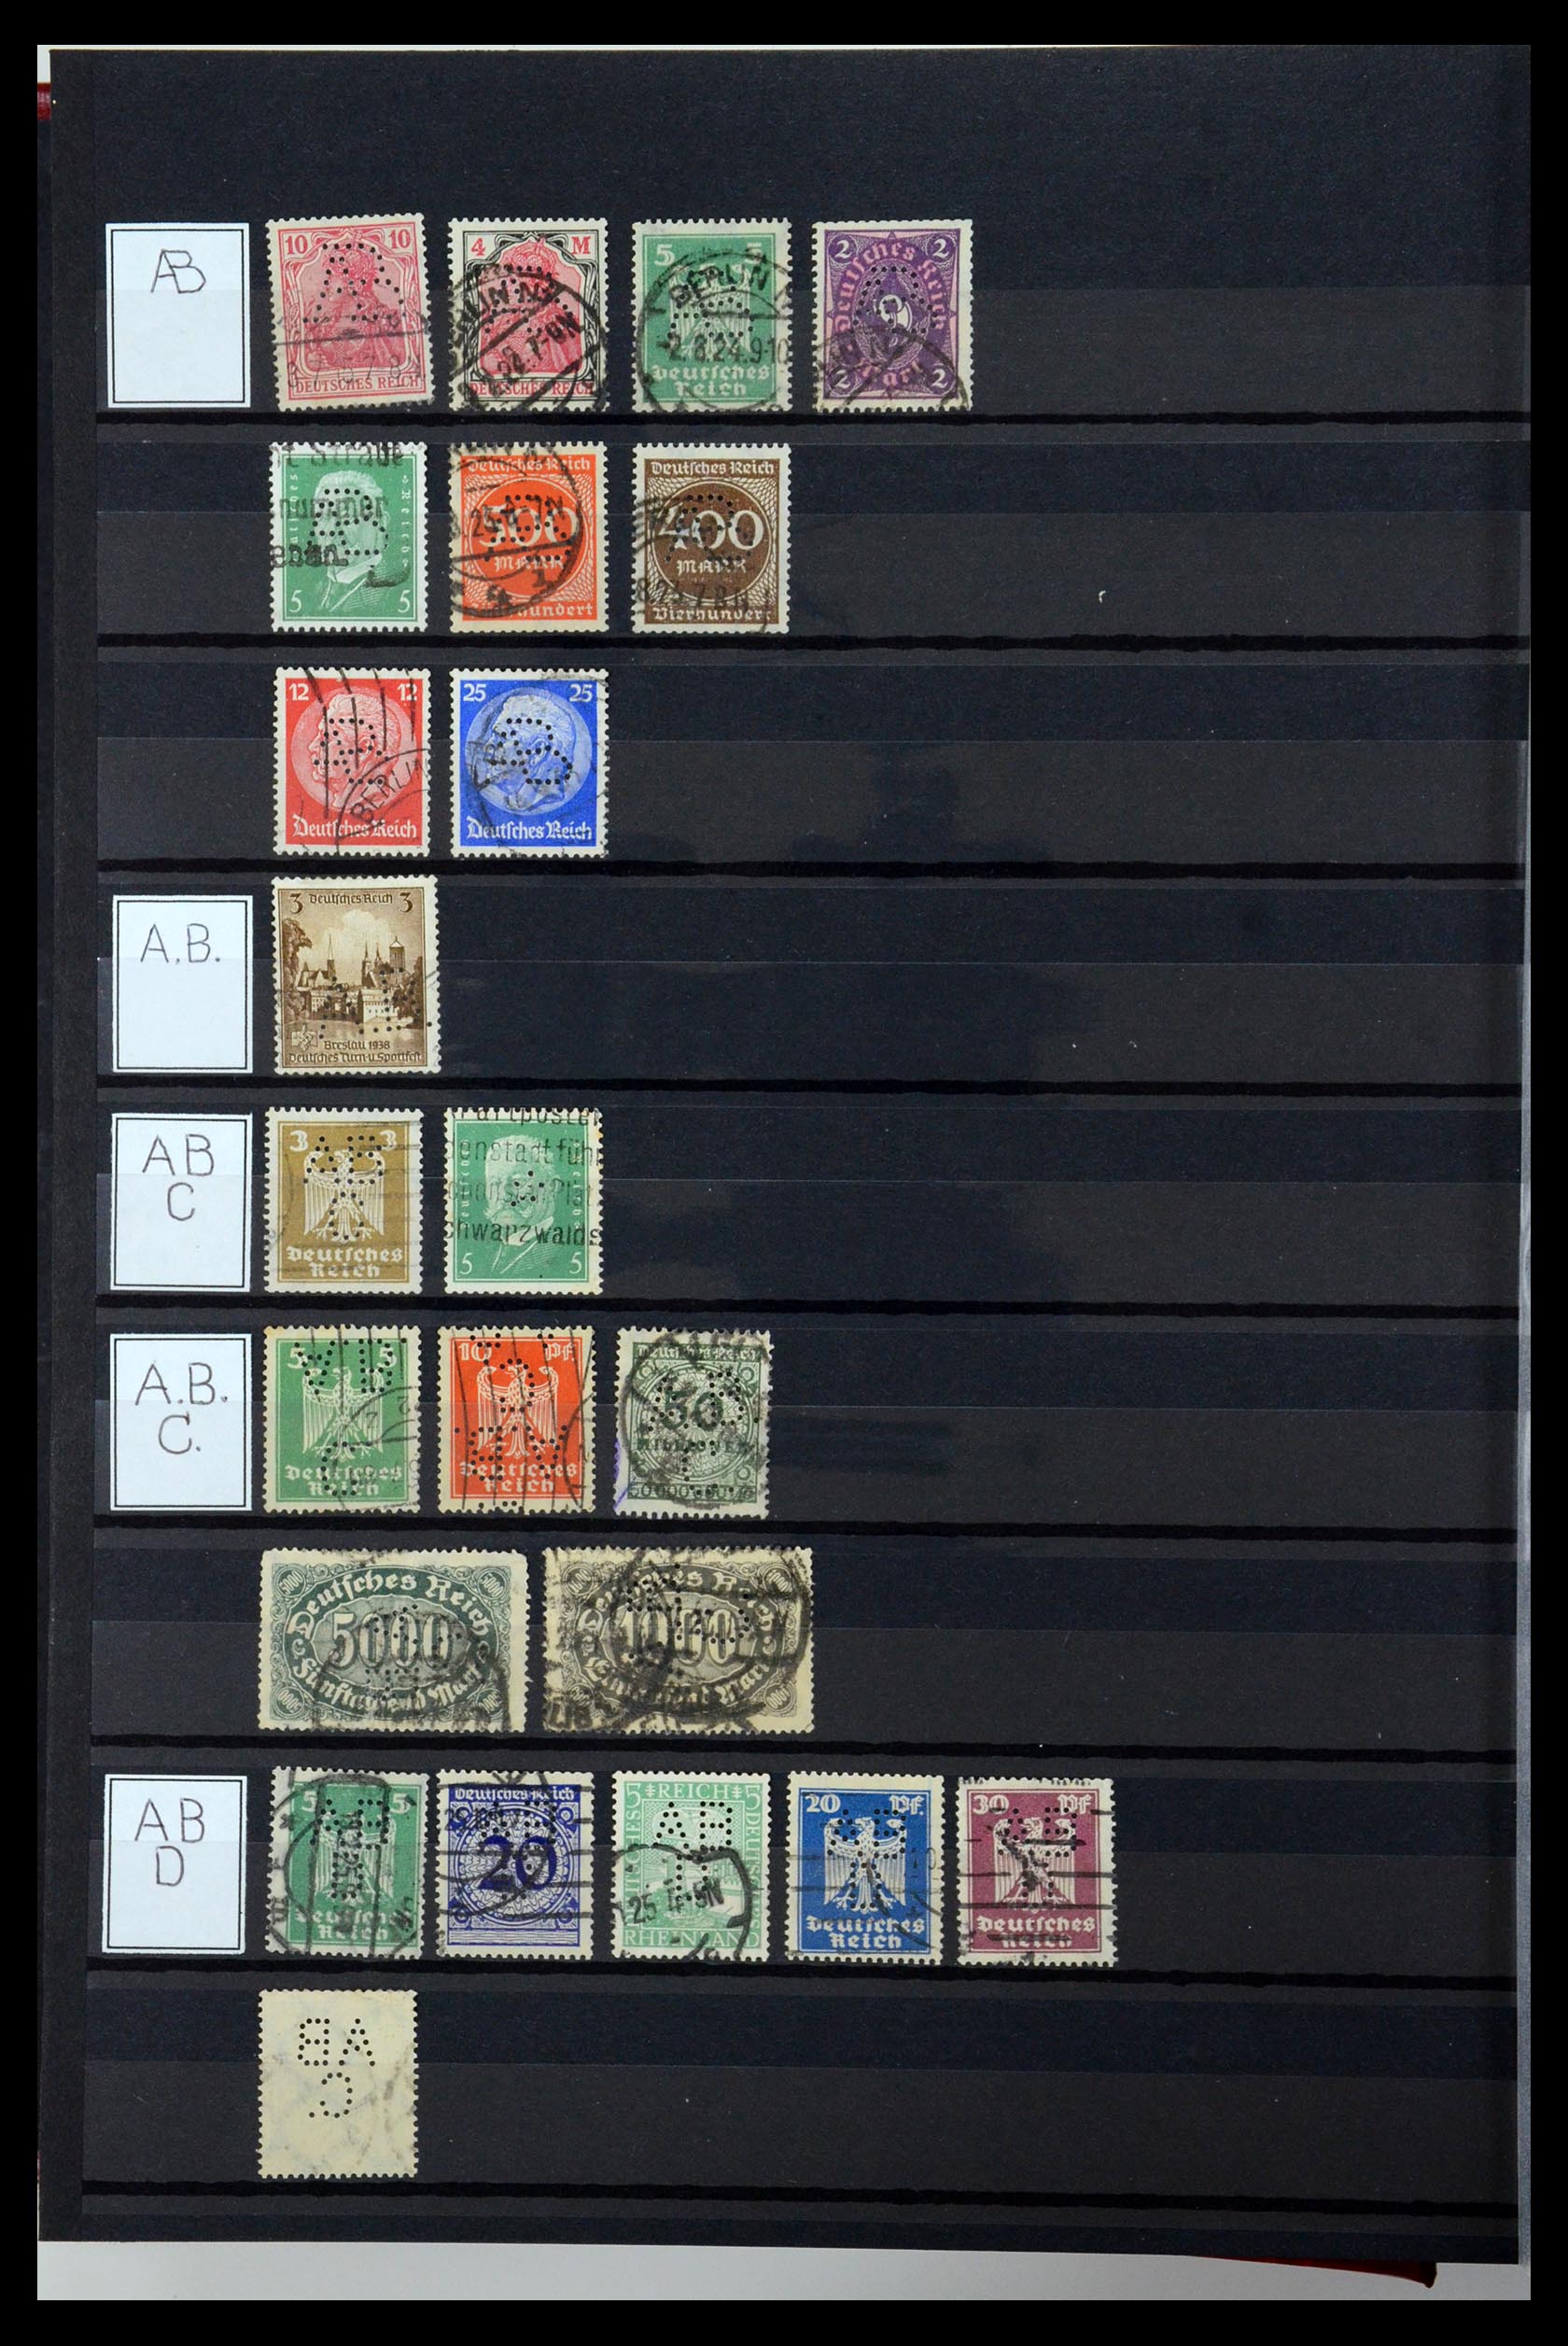 36405 004 - Stamp collection 36405 German Reich perfins 1880-1945.